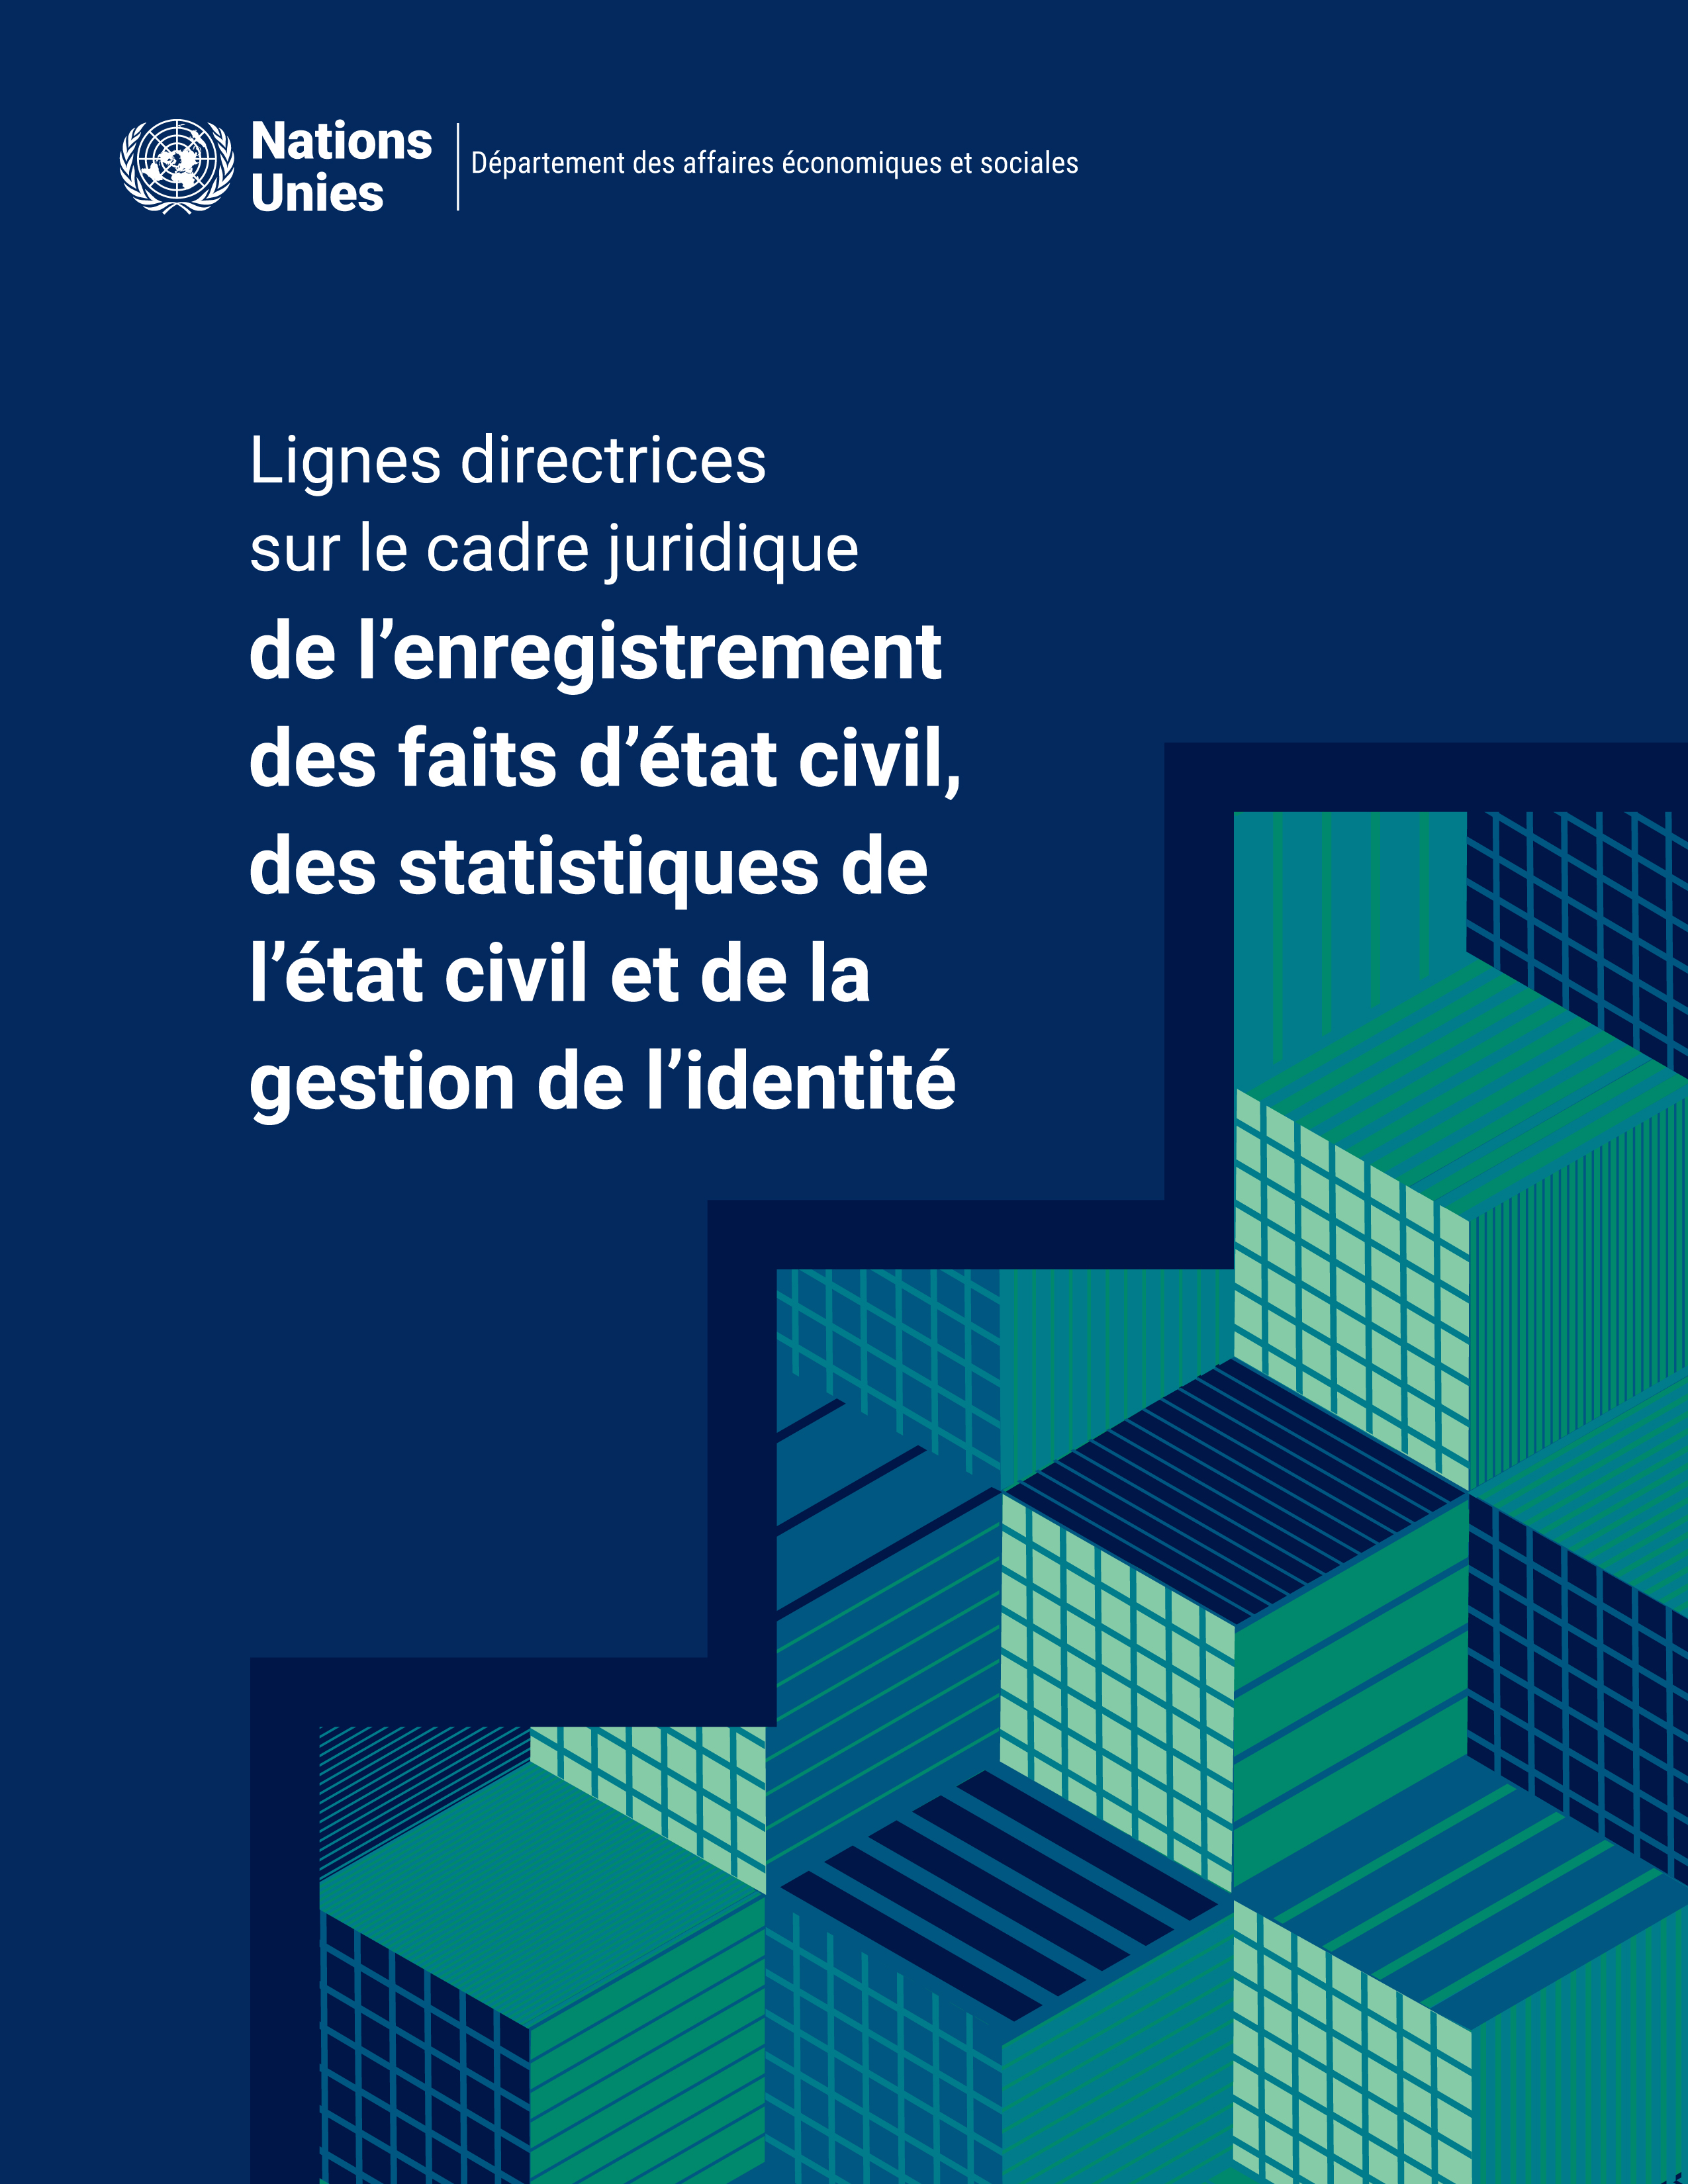 image of Lignes directrices sur le cadre juridique de l’enregistrement des faits d’état civil, des statistiques de l’état civil et de la gestion de l’identité